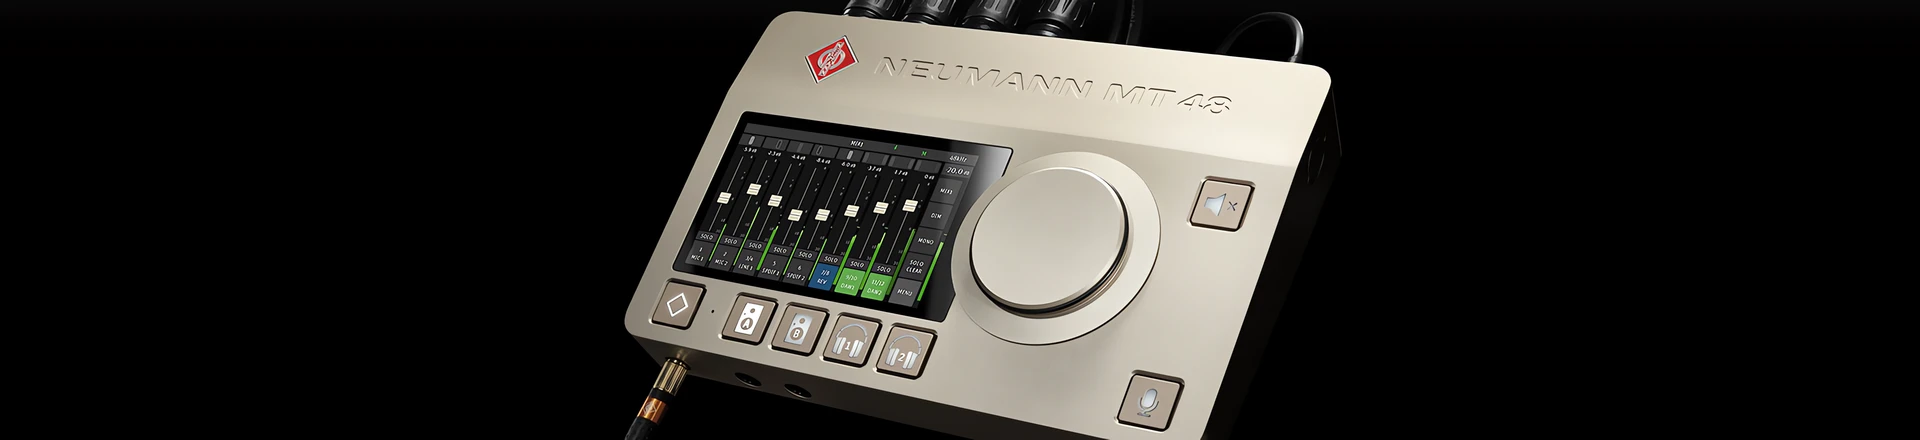 MT 48, czyli pierwszy interfejs audio od Neumanna